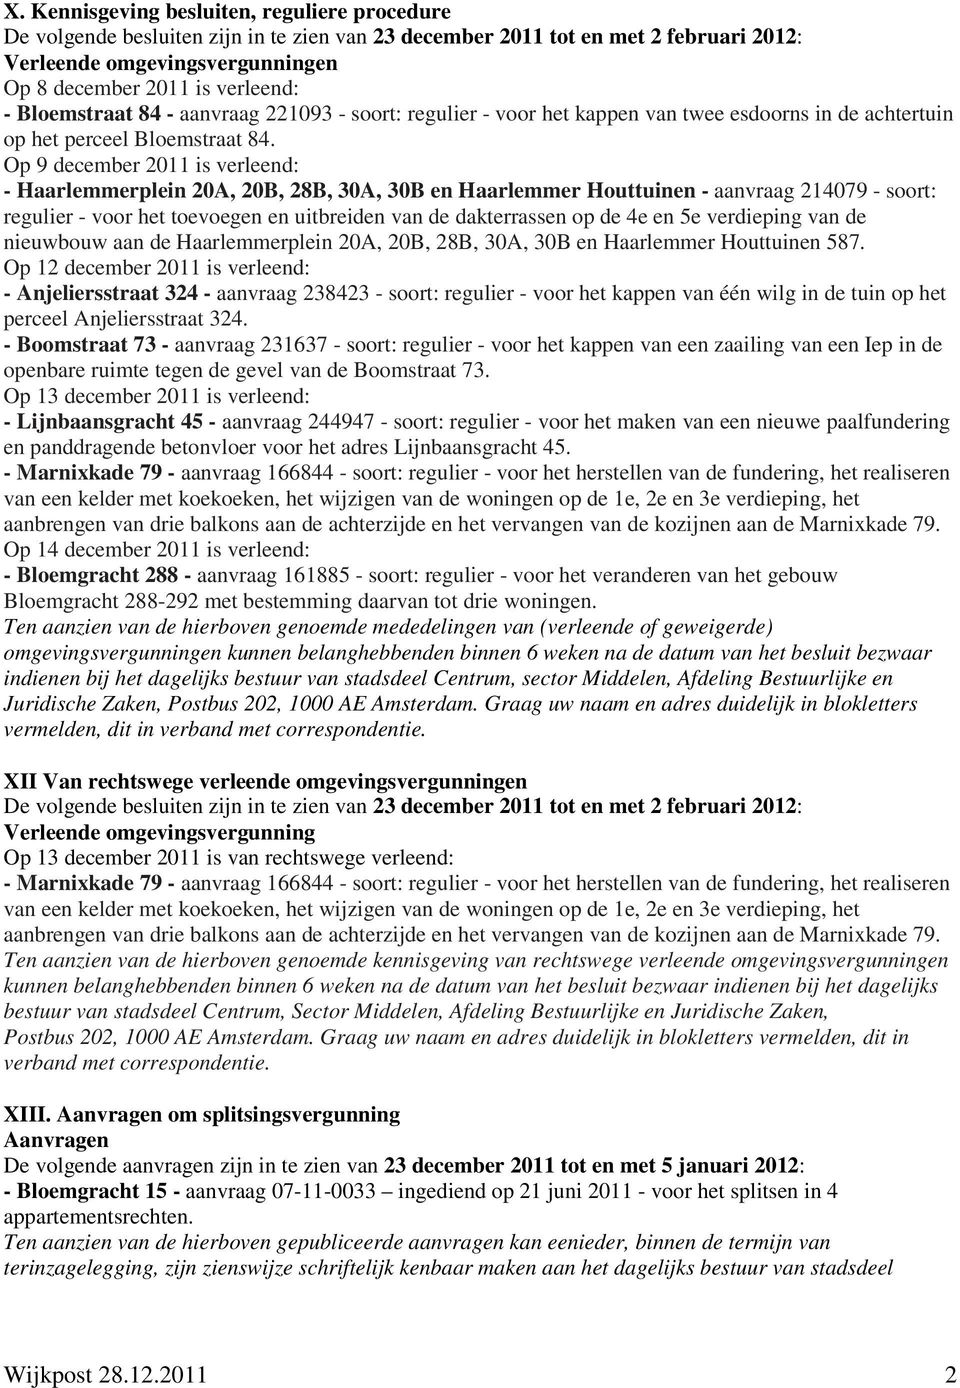 Op 9 december 2011 is verleend: - Haarlemmerplein 20A, 20B, 28B, 30A, 30B en Haarlemmer Houttuinen - aanvraag 214079 - soort: regulier - voor het toevoegen en uitbreiden van de dakterrassen op de 4e